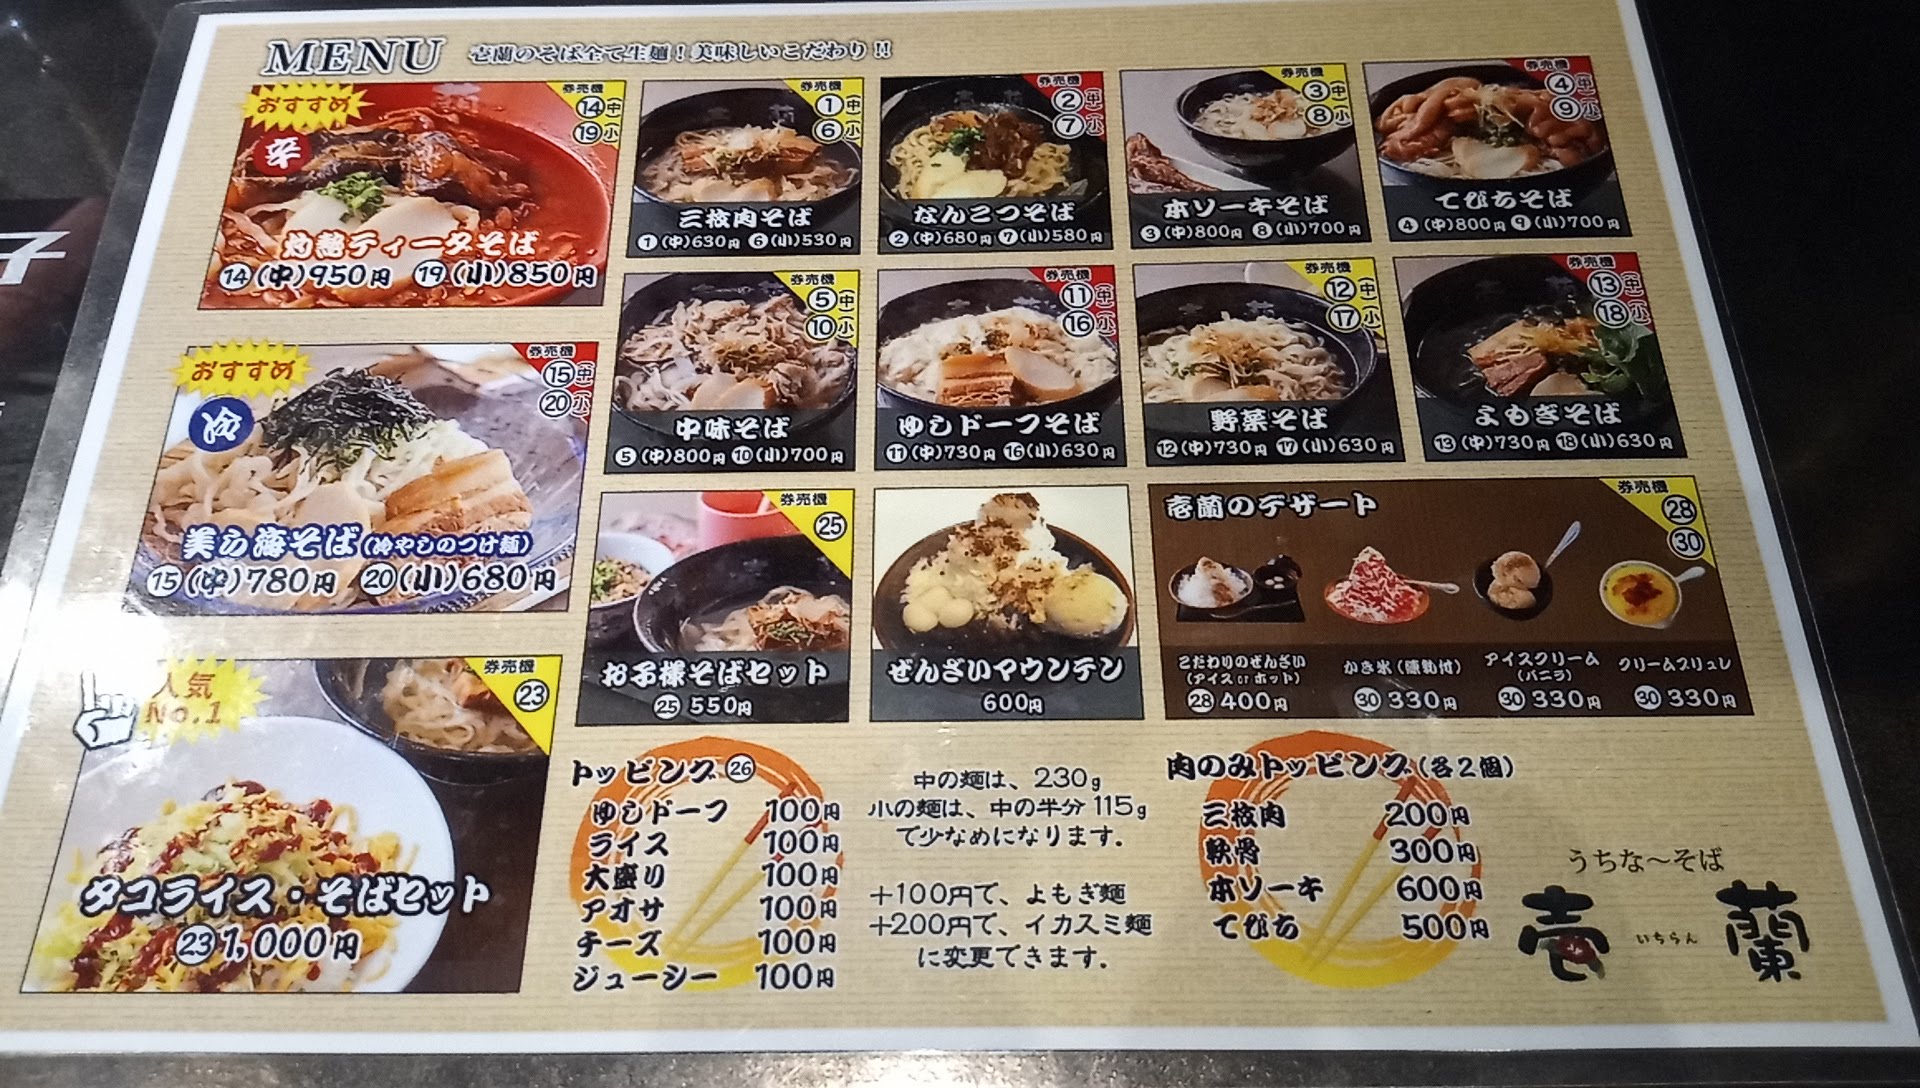 Ichiran food menu